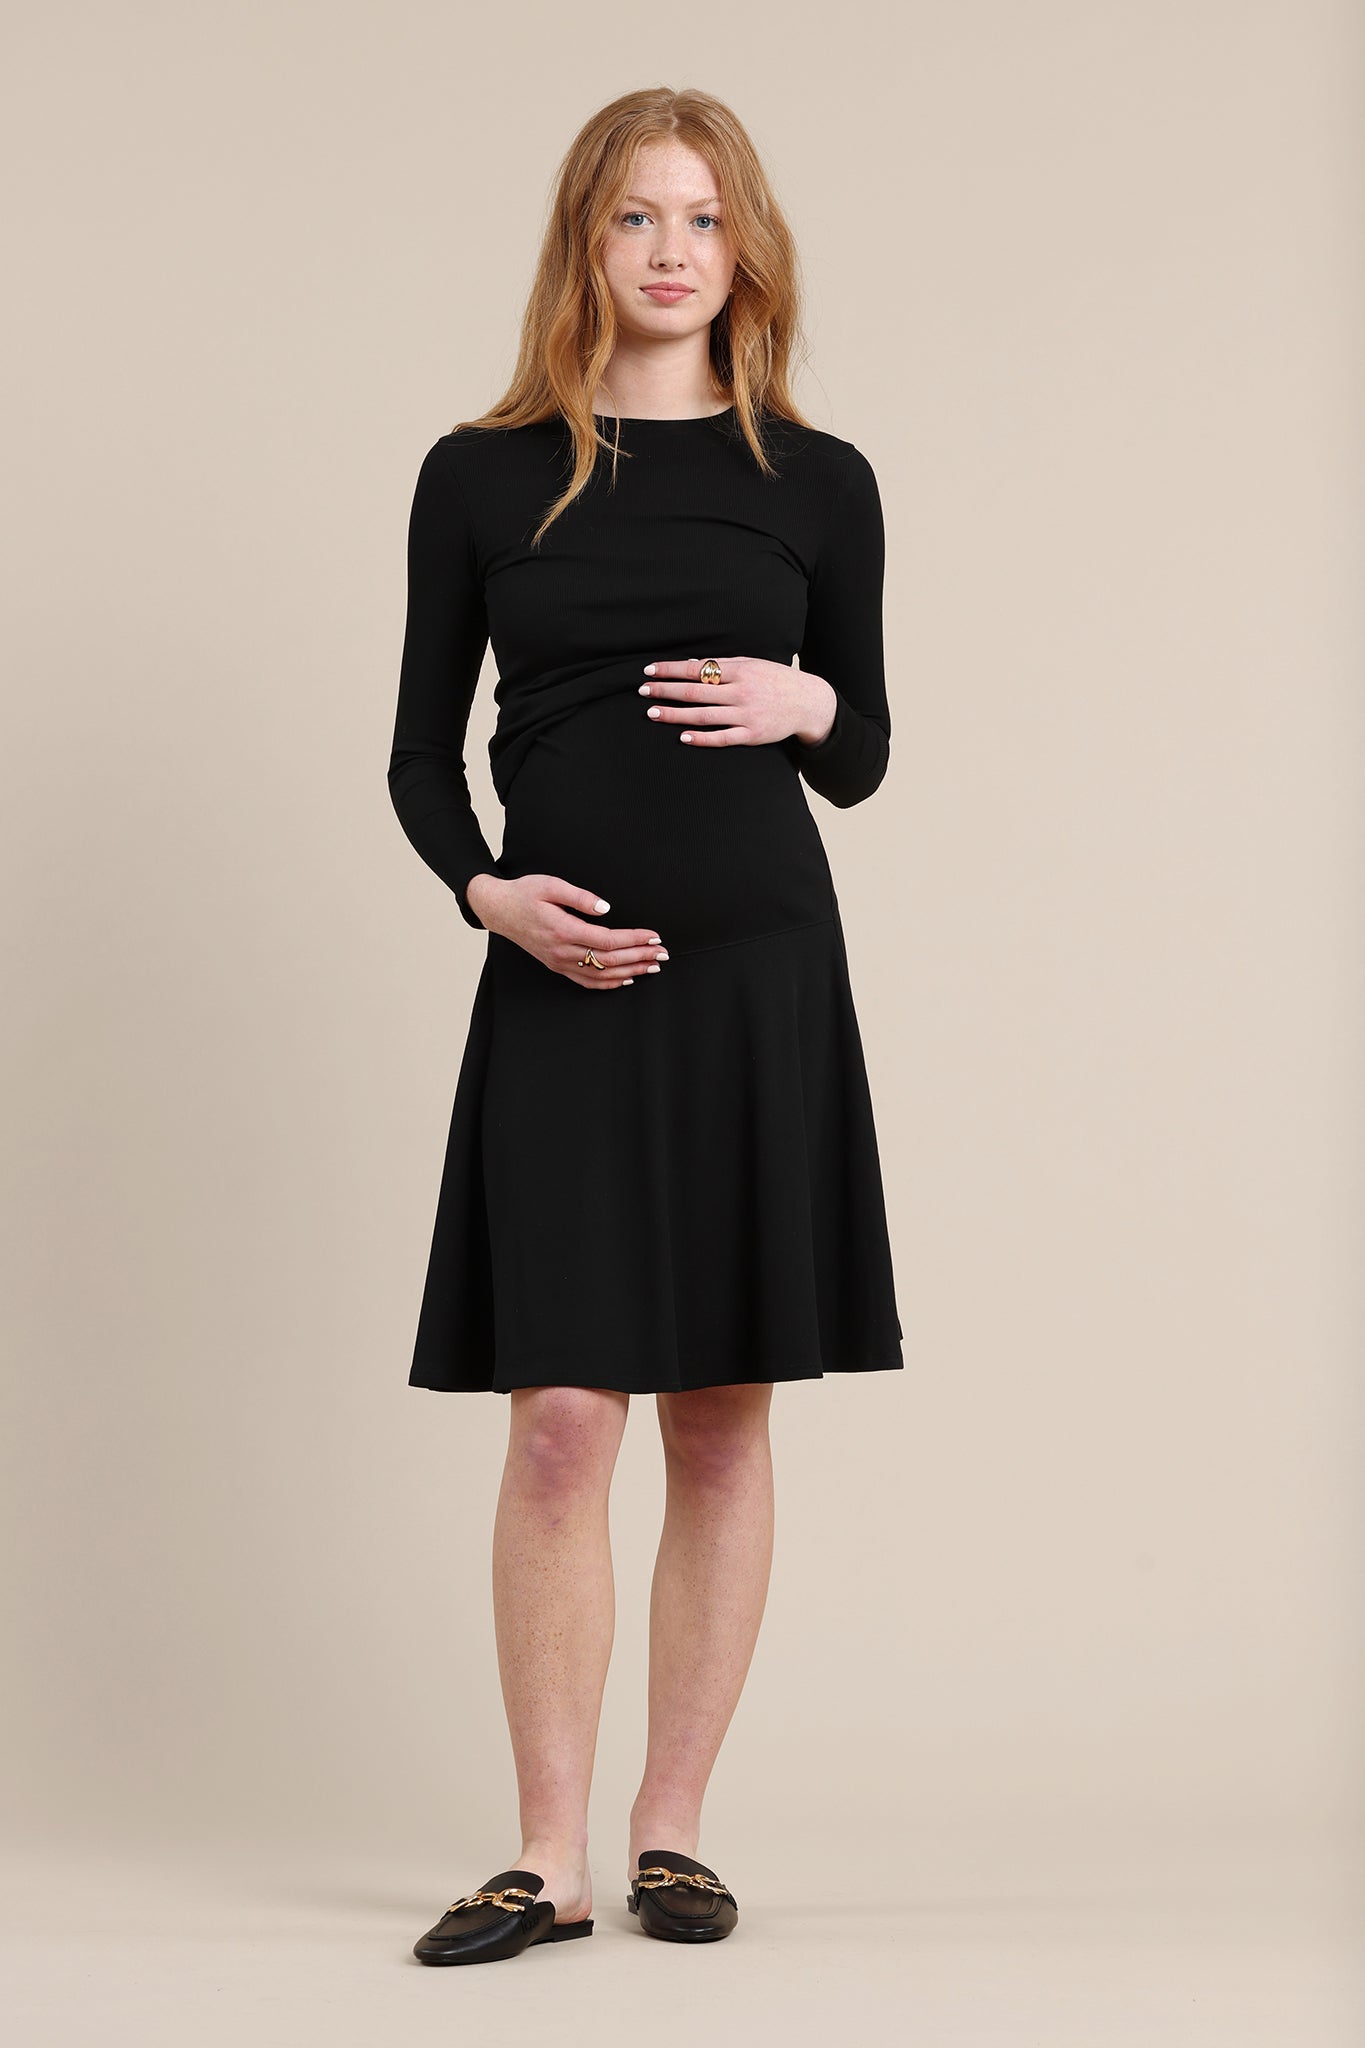 Amethyst Maternity Skirt in Black